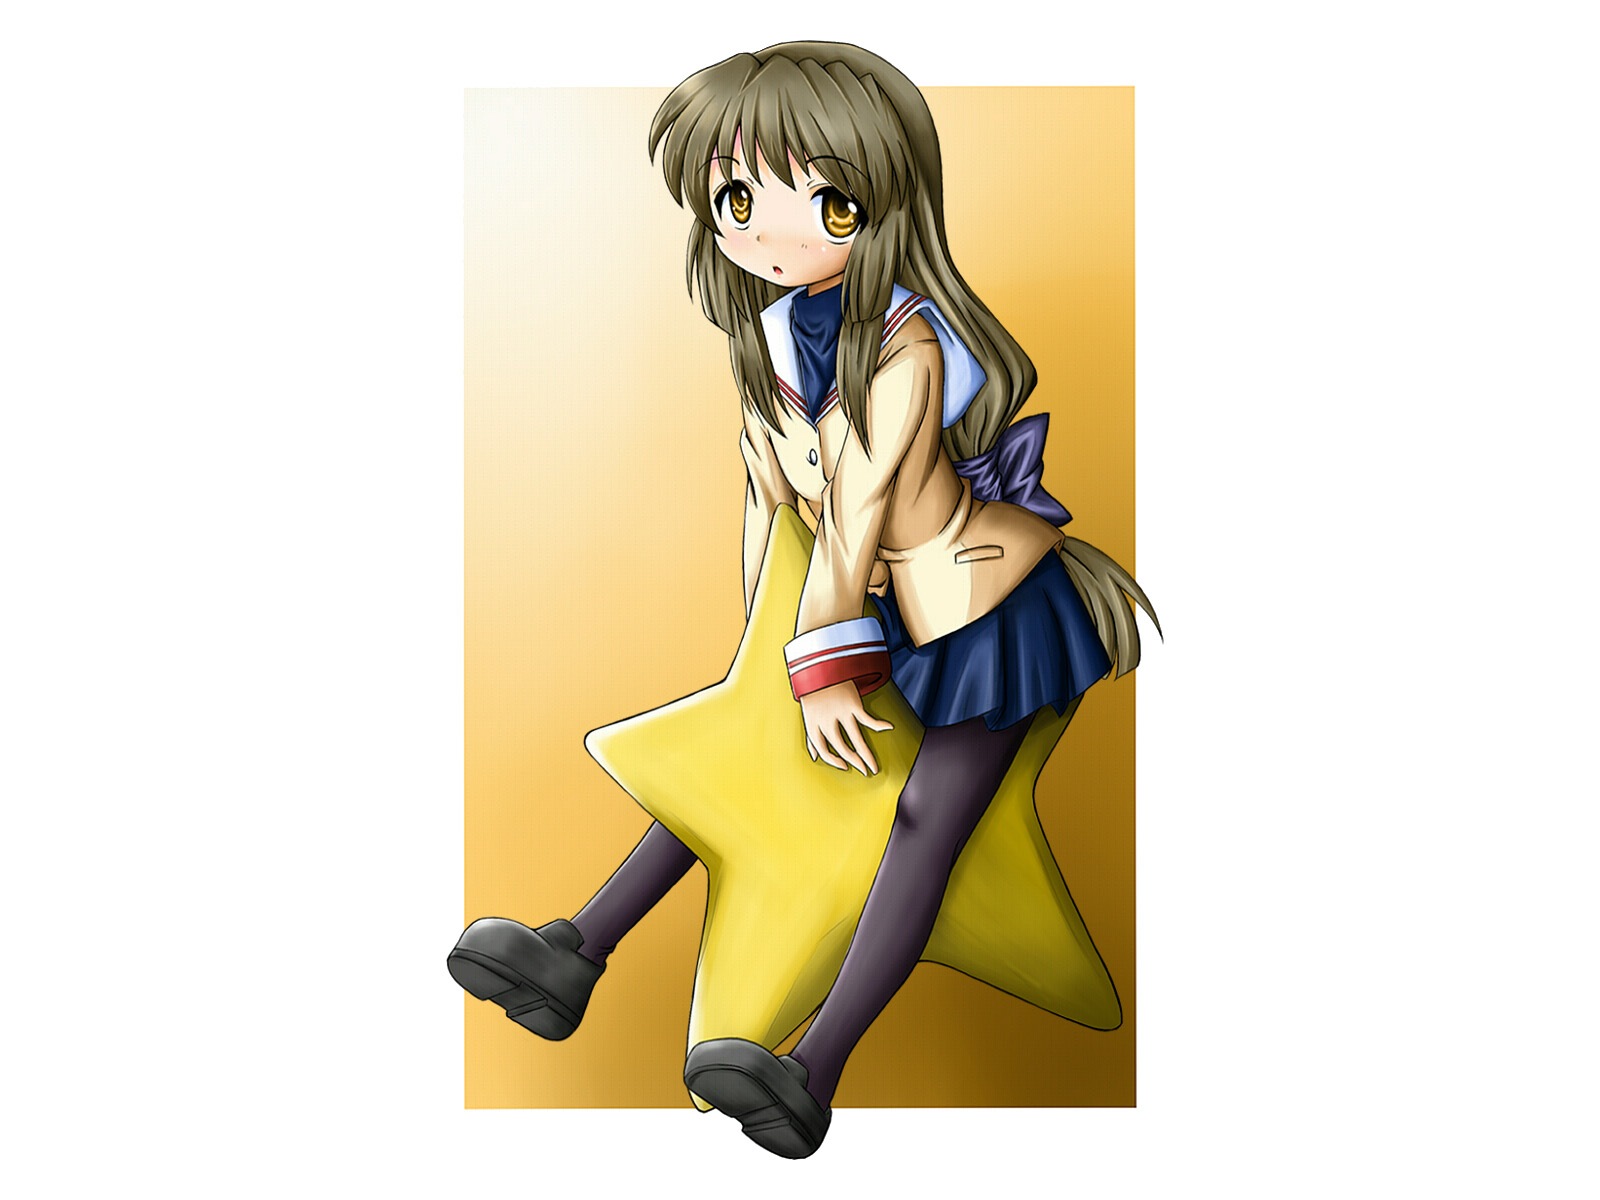 Descarga gratuita de fondo de pantalla para móvil de Animado, Clannad, Fuuko Ibuki.